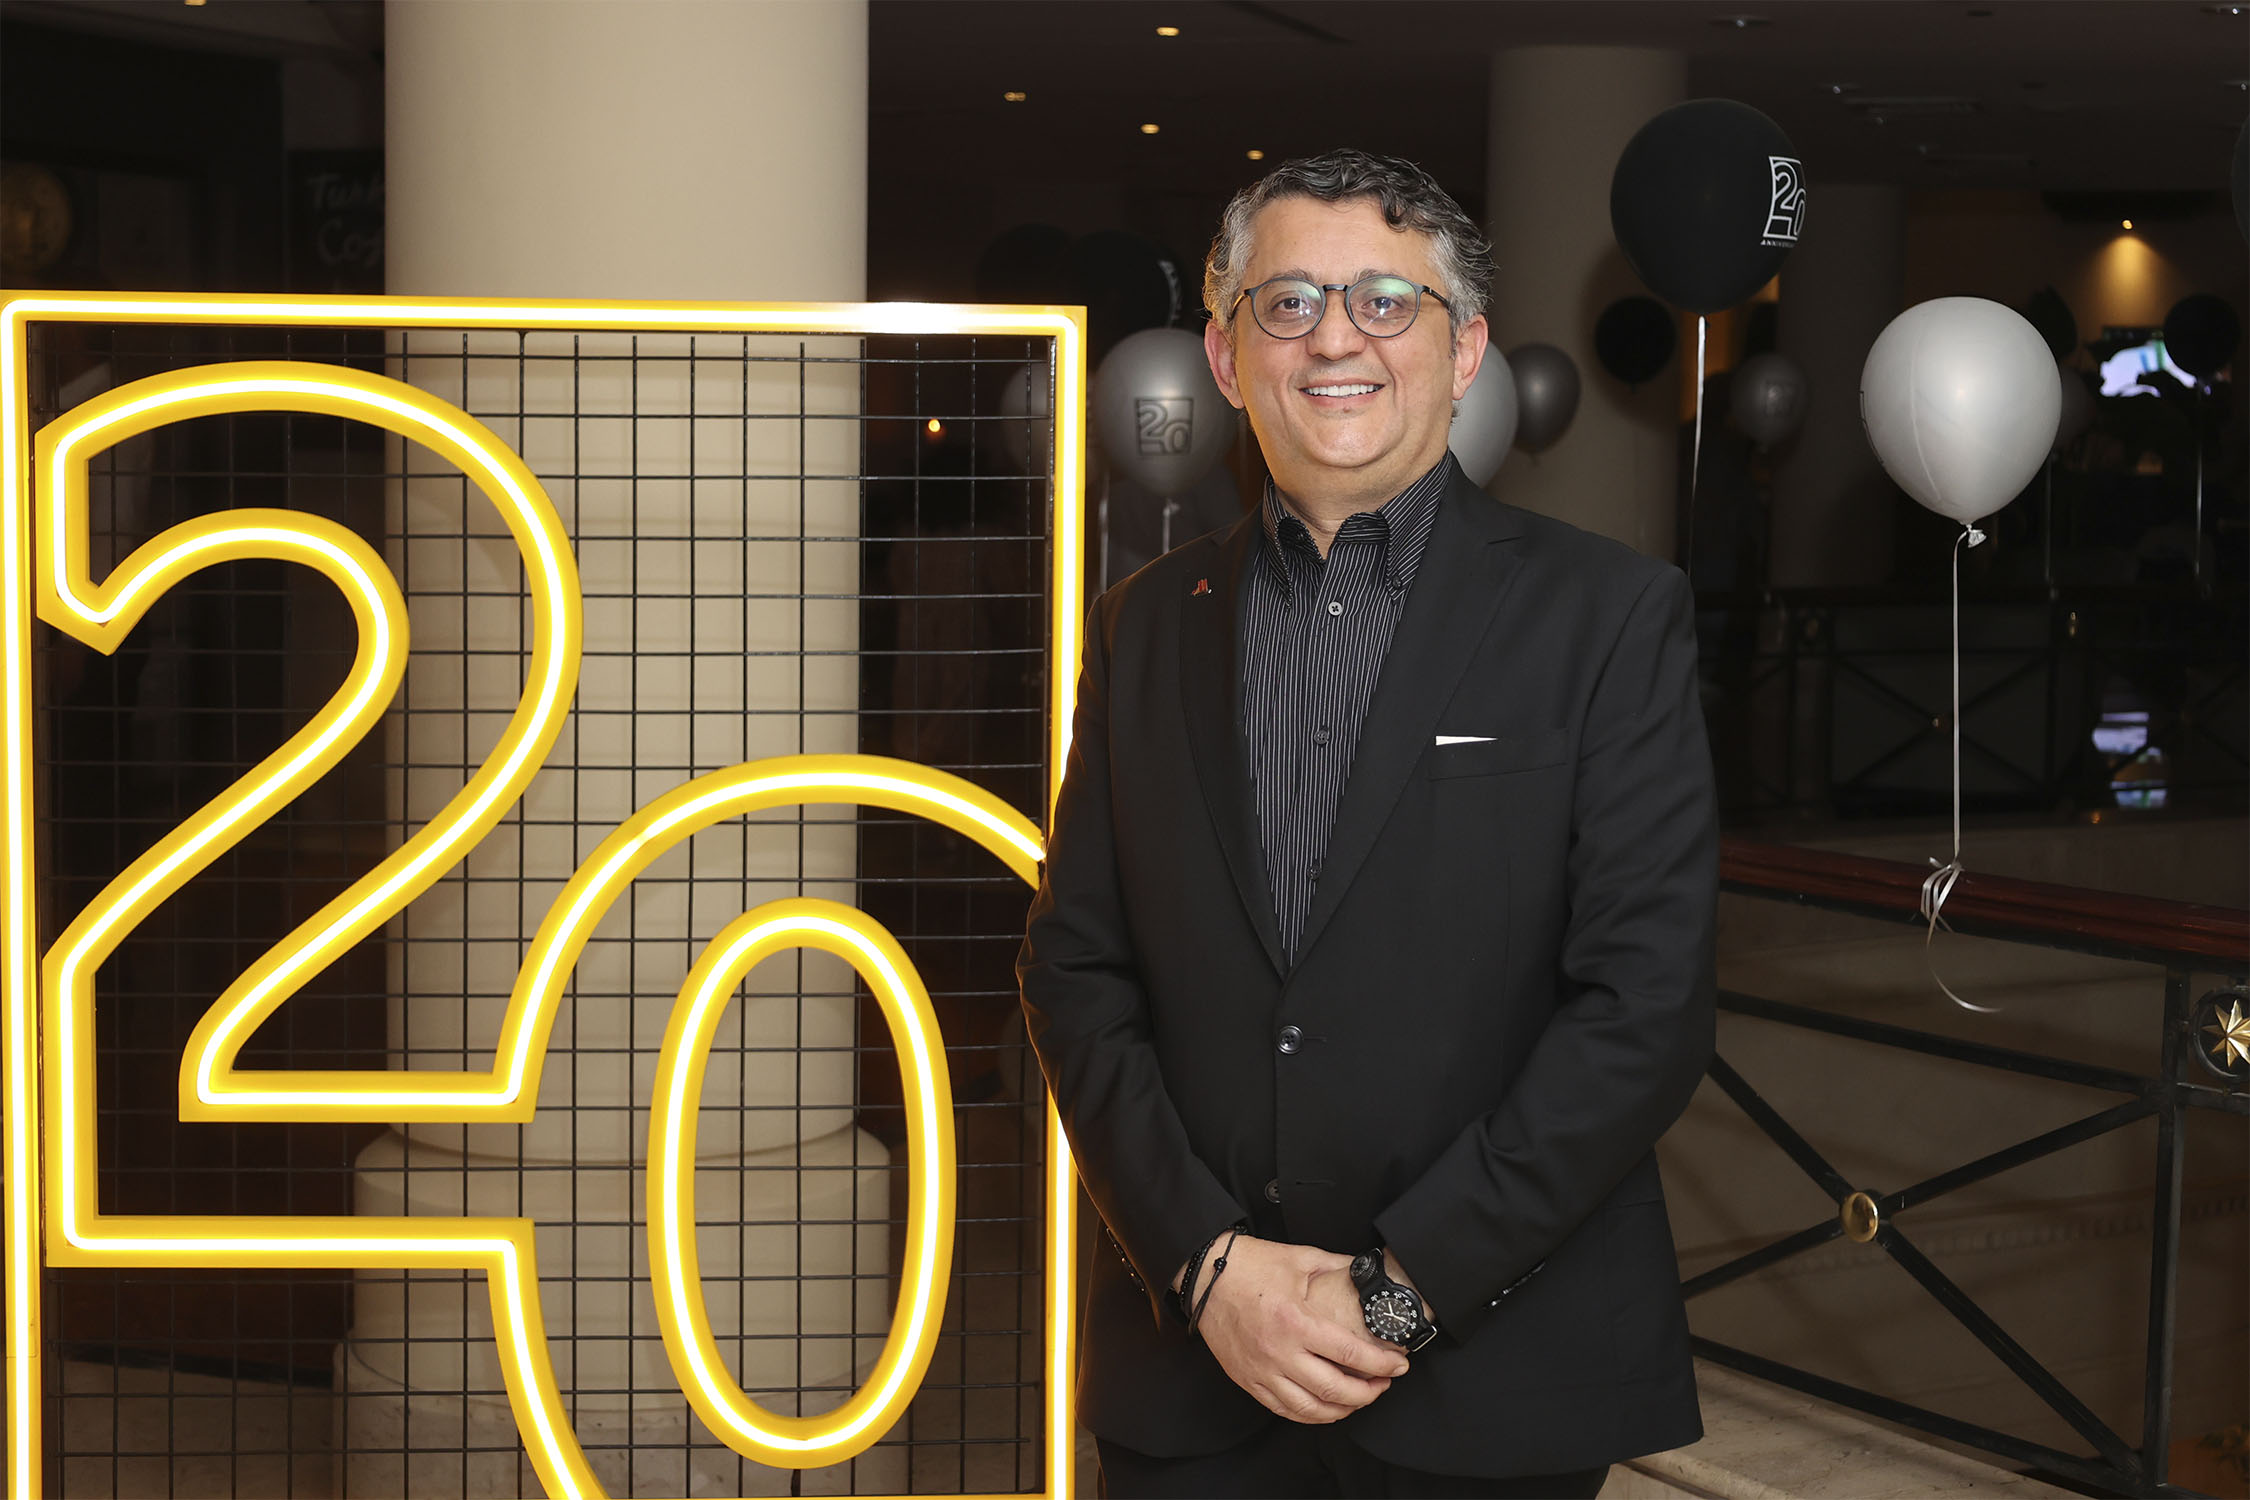 Muhannad Hameed, GM of Dead Sea Marriott Resort & Spa